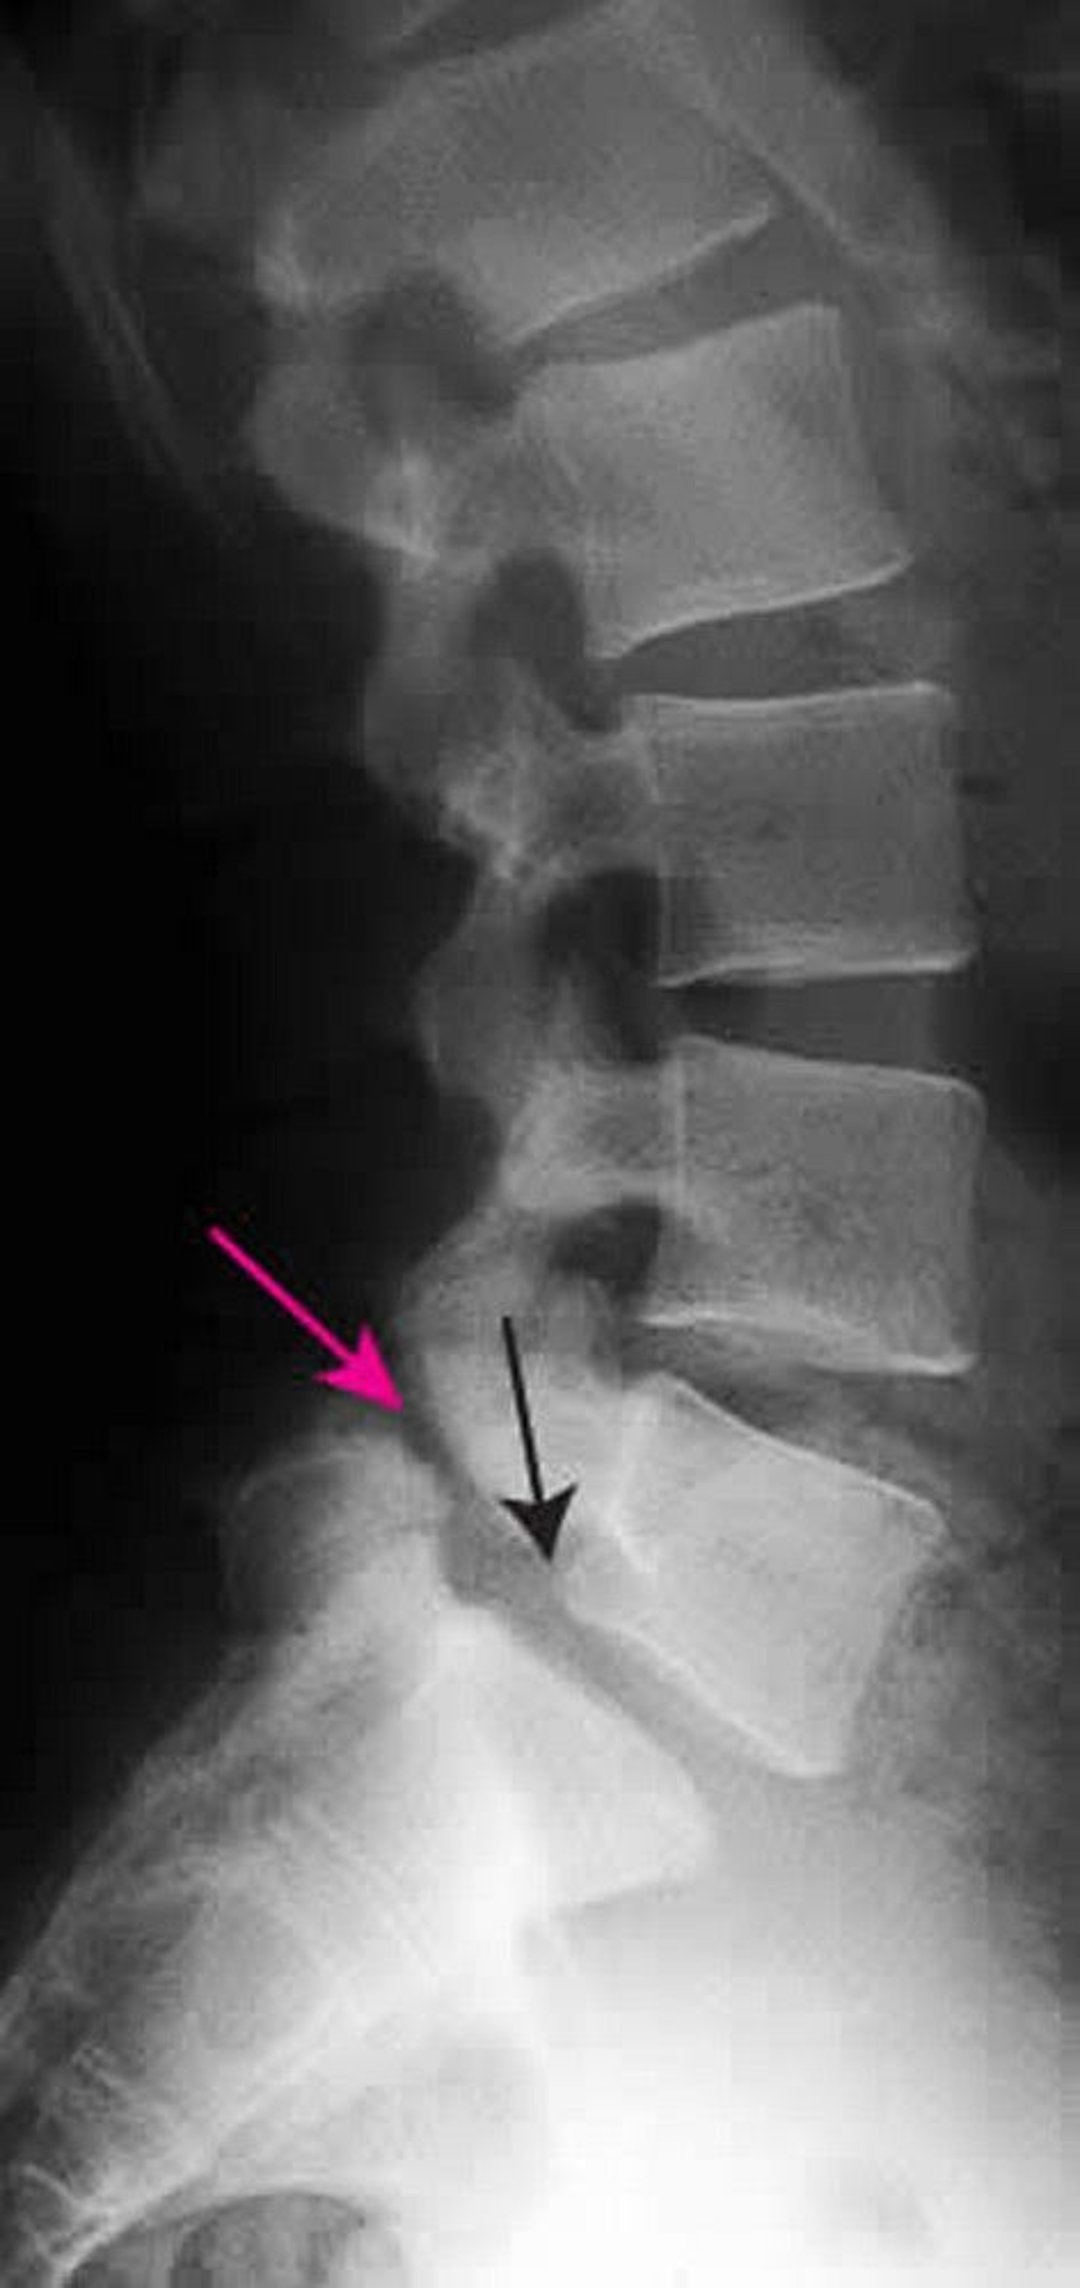 spondylolisthesis cervical spine symptoms